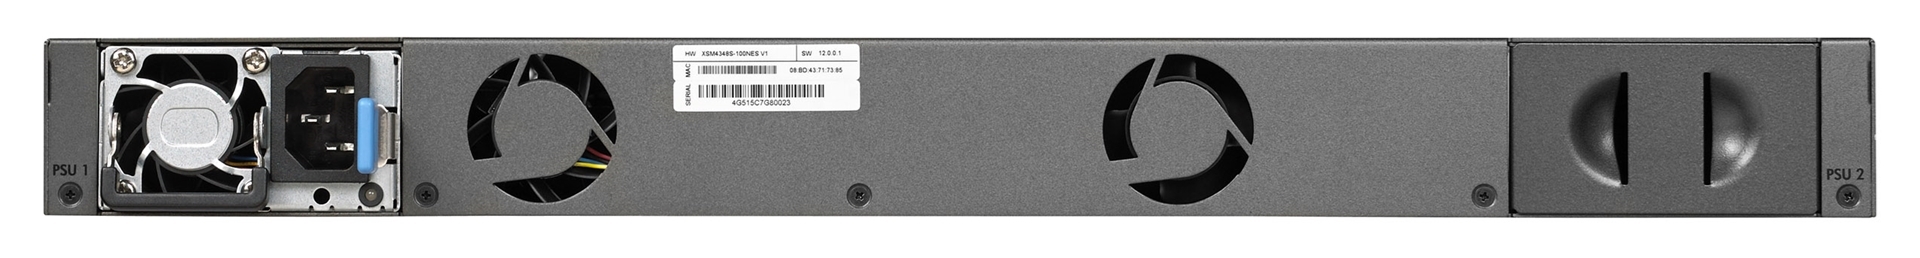 Kramer M4300-24X24F - Управляемый сетевой коммутатор Netgear, 24 порта 10GBASE-T и 24 порта 10GBASE-X SFP+